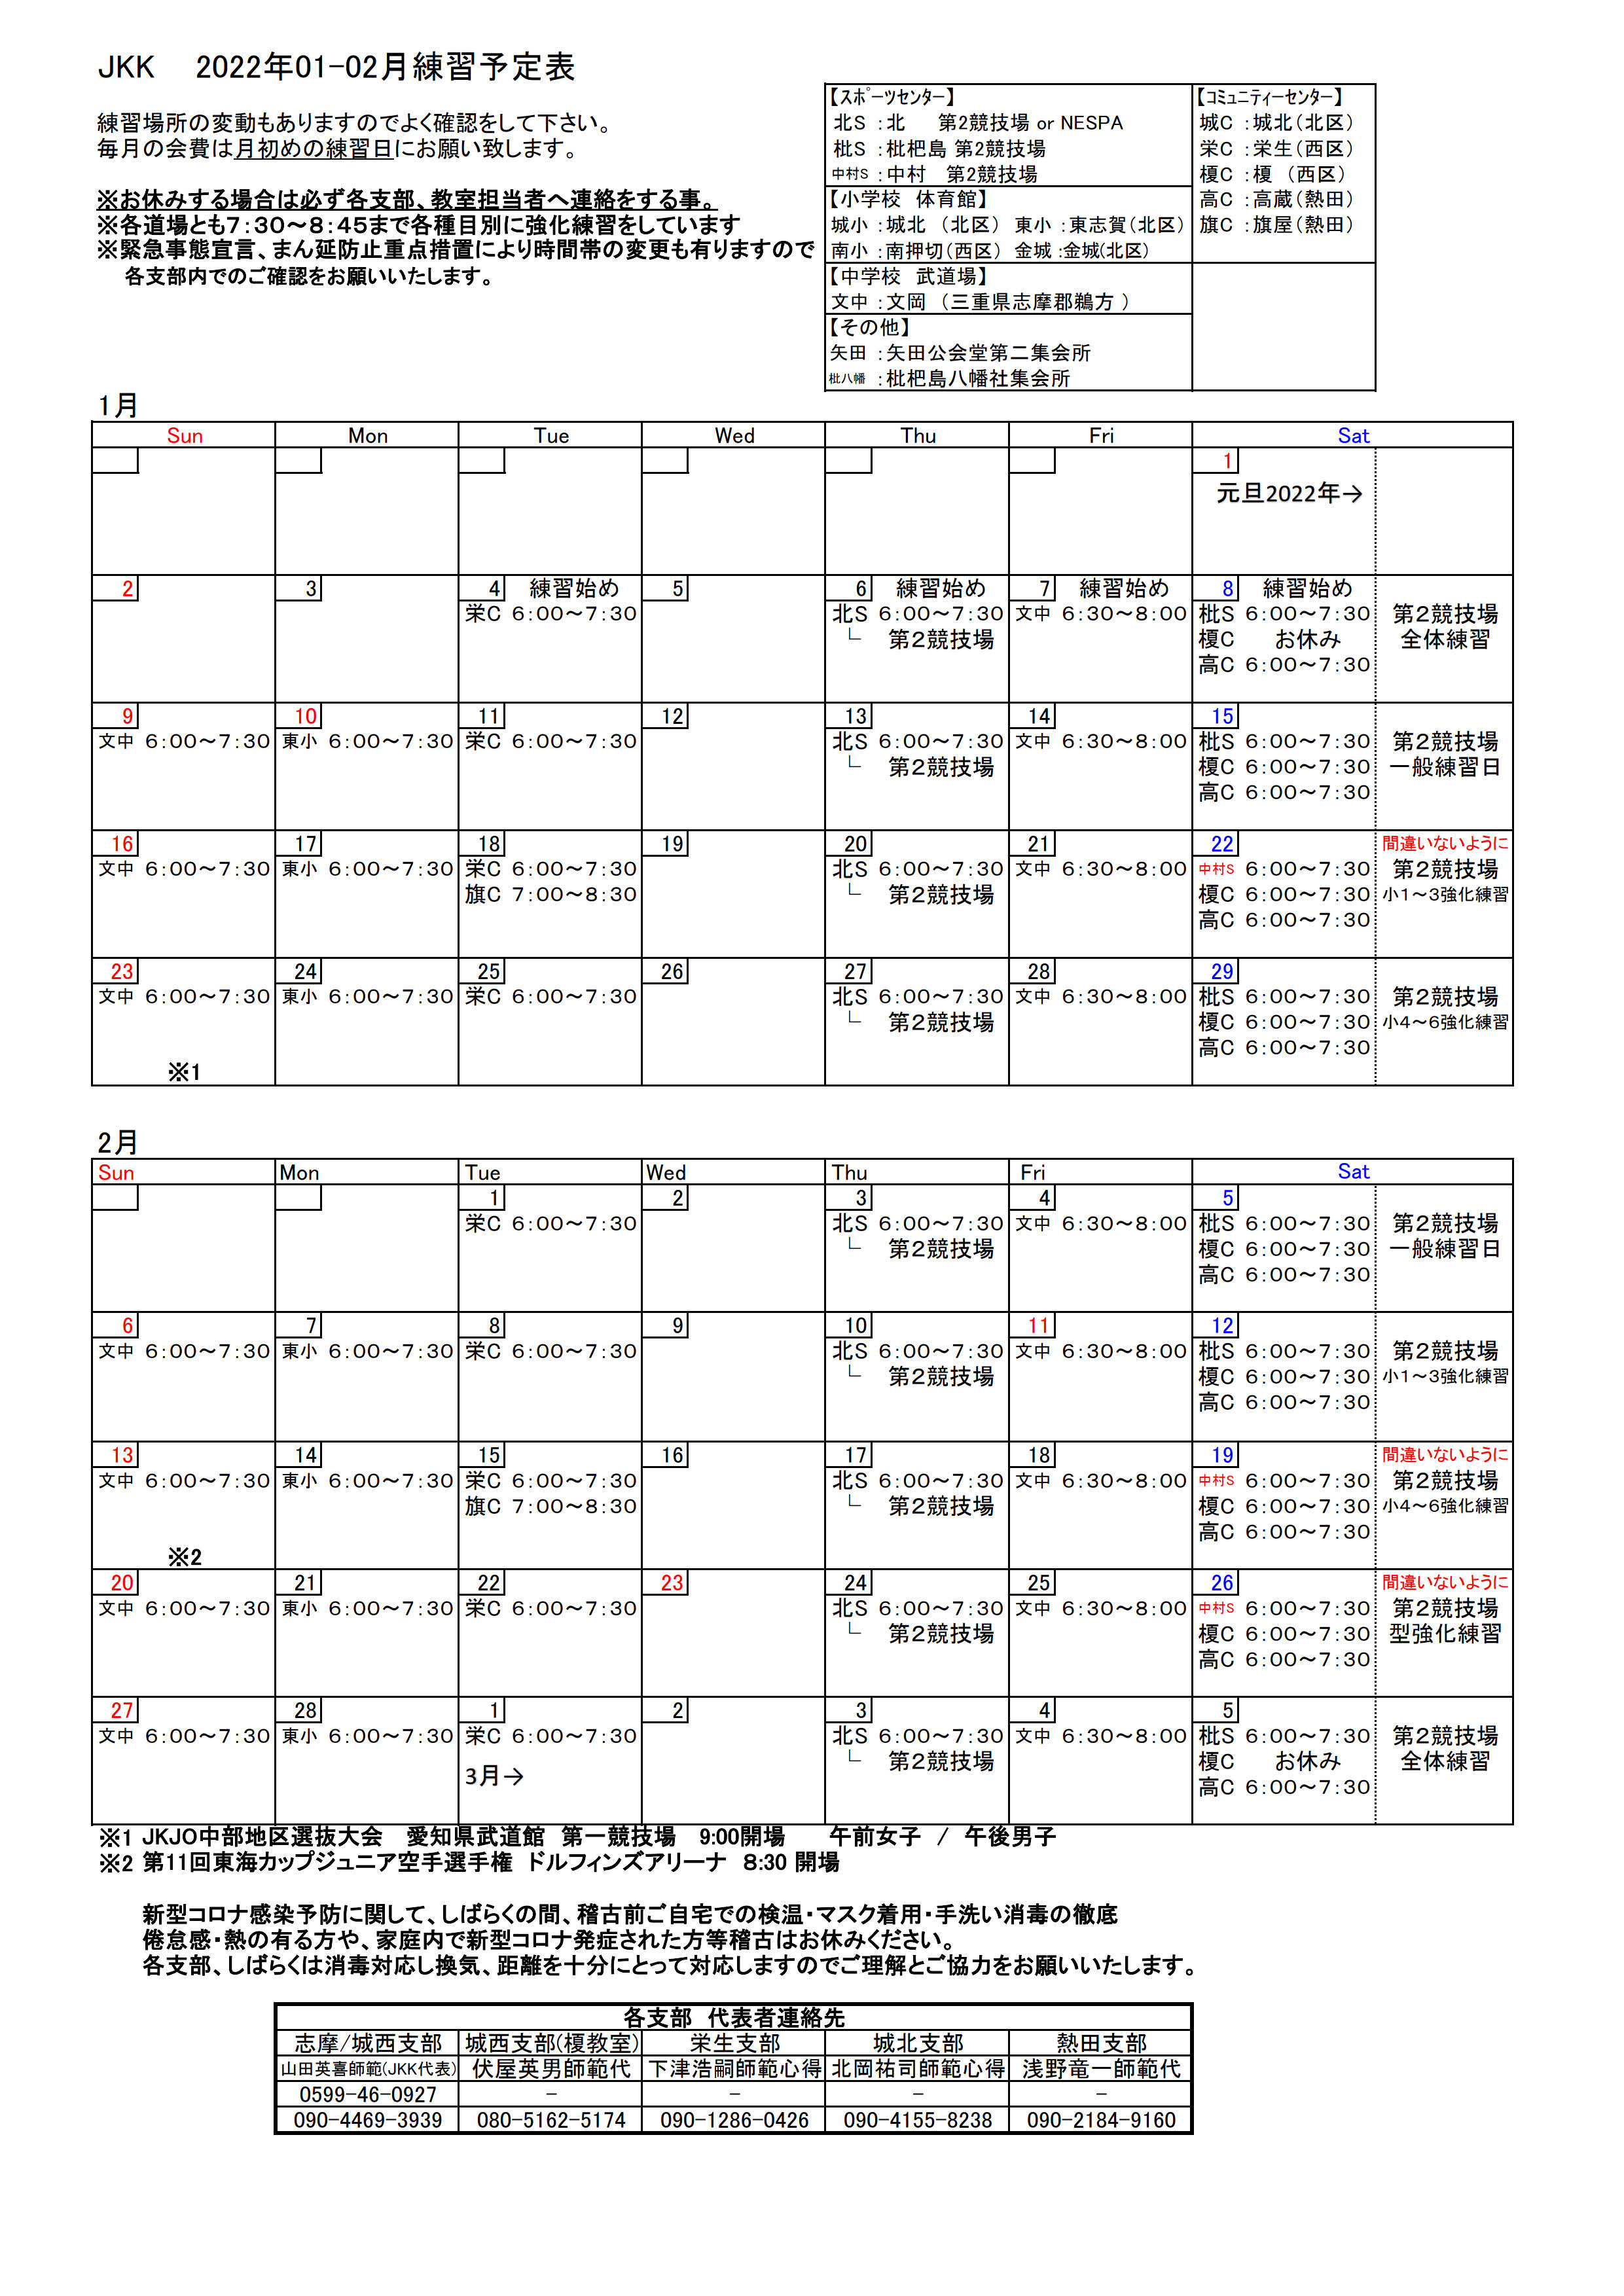 202201-02_Schedule001.jpg